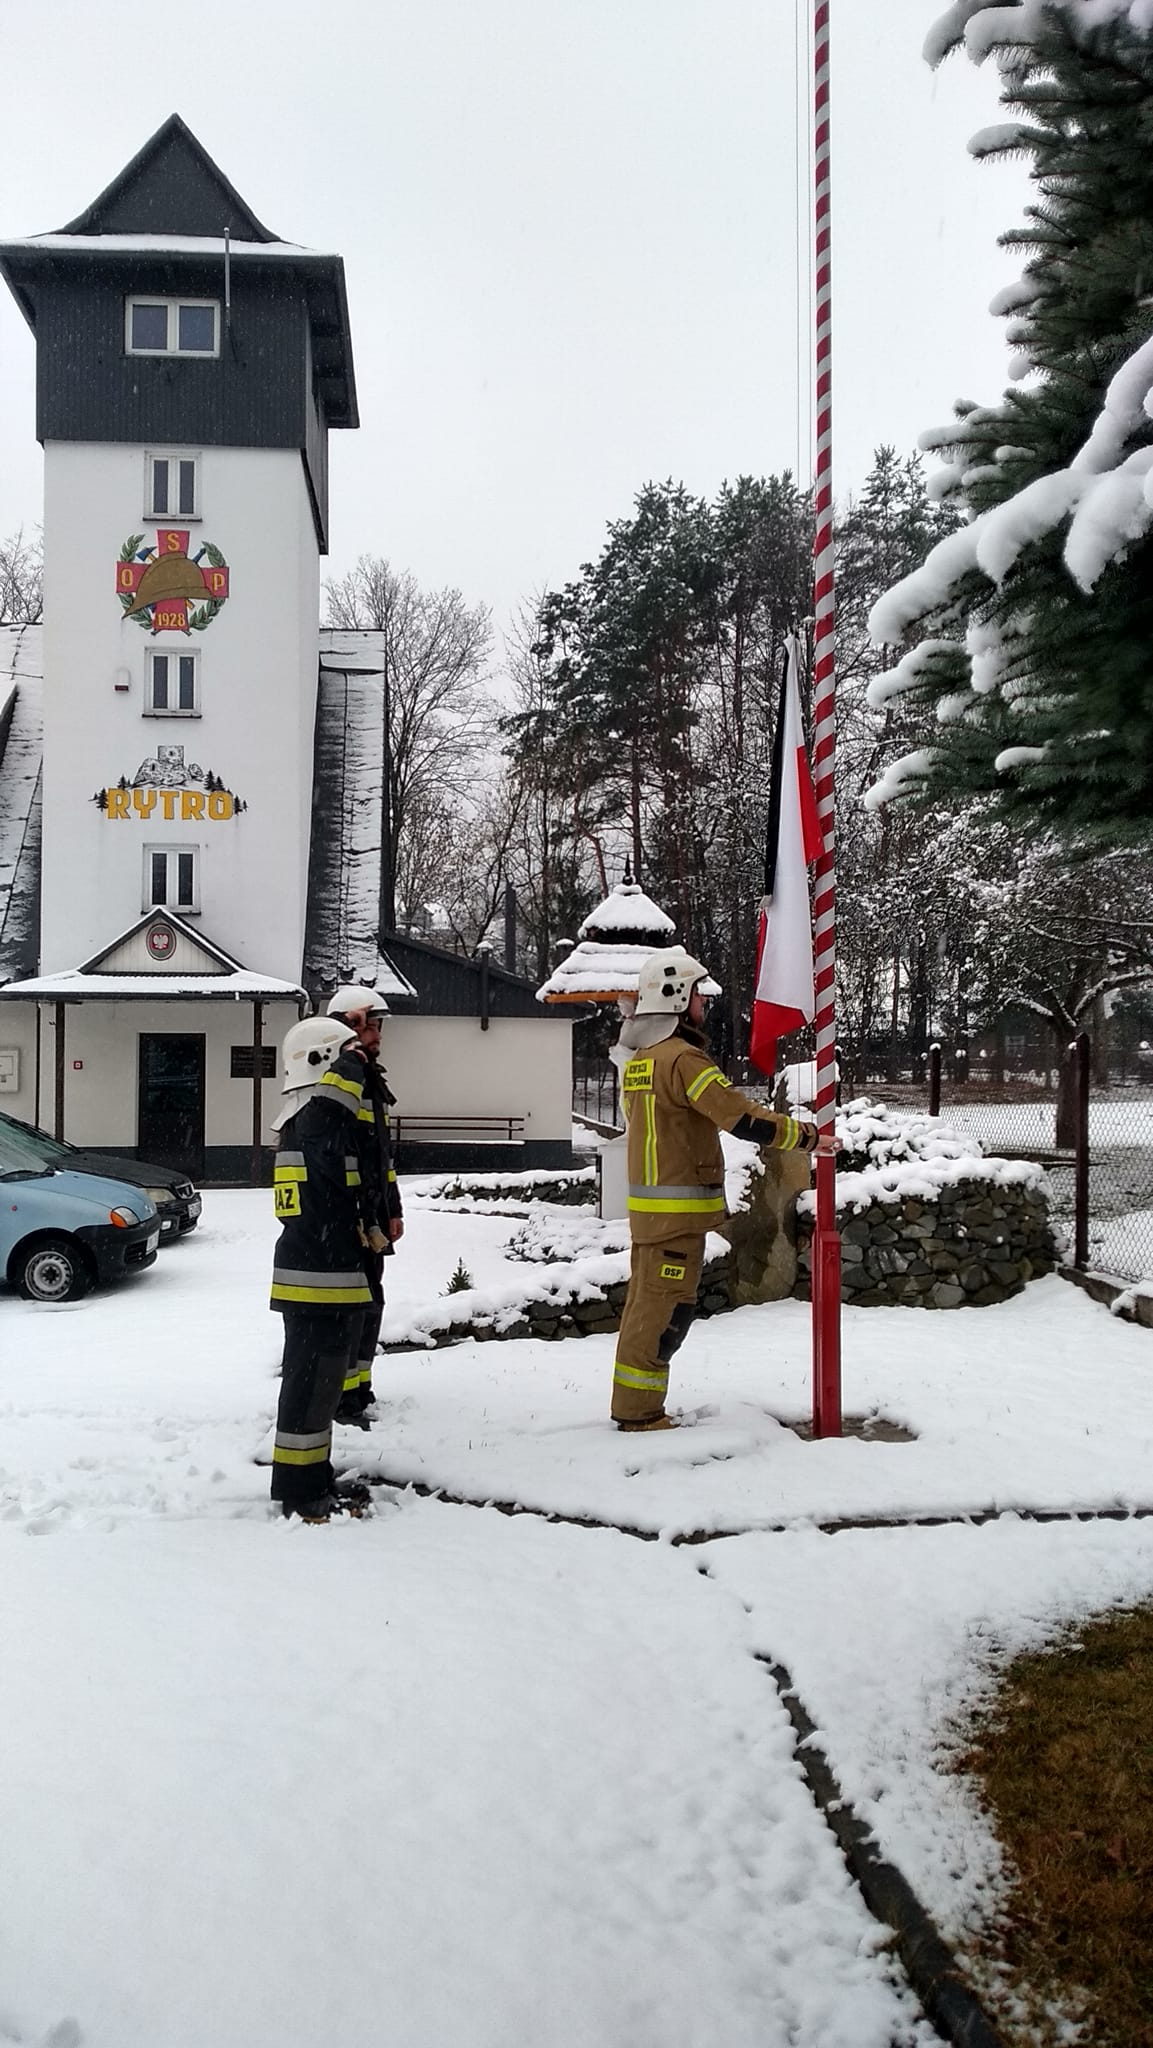 OSP Czernikowo, minuta dla strażaków tragicznie zmarłych, powiat nowosądecki, limanowski, gorlicki. OSP Rytro